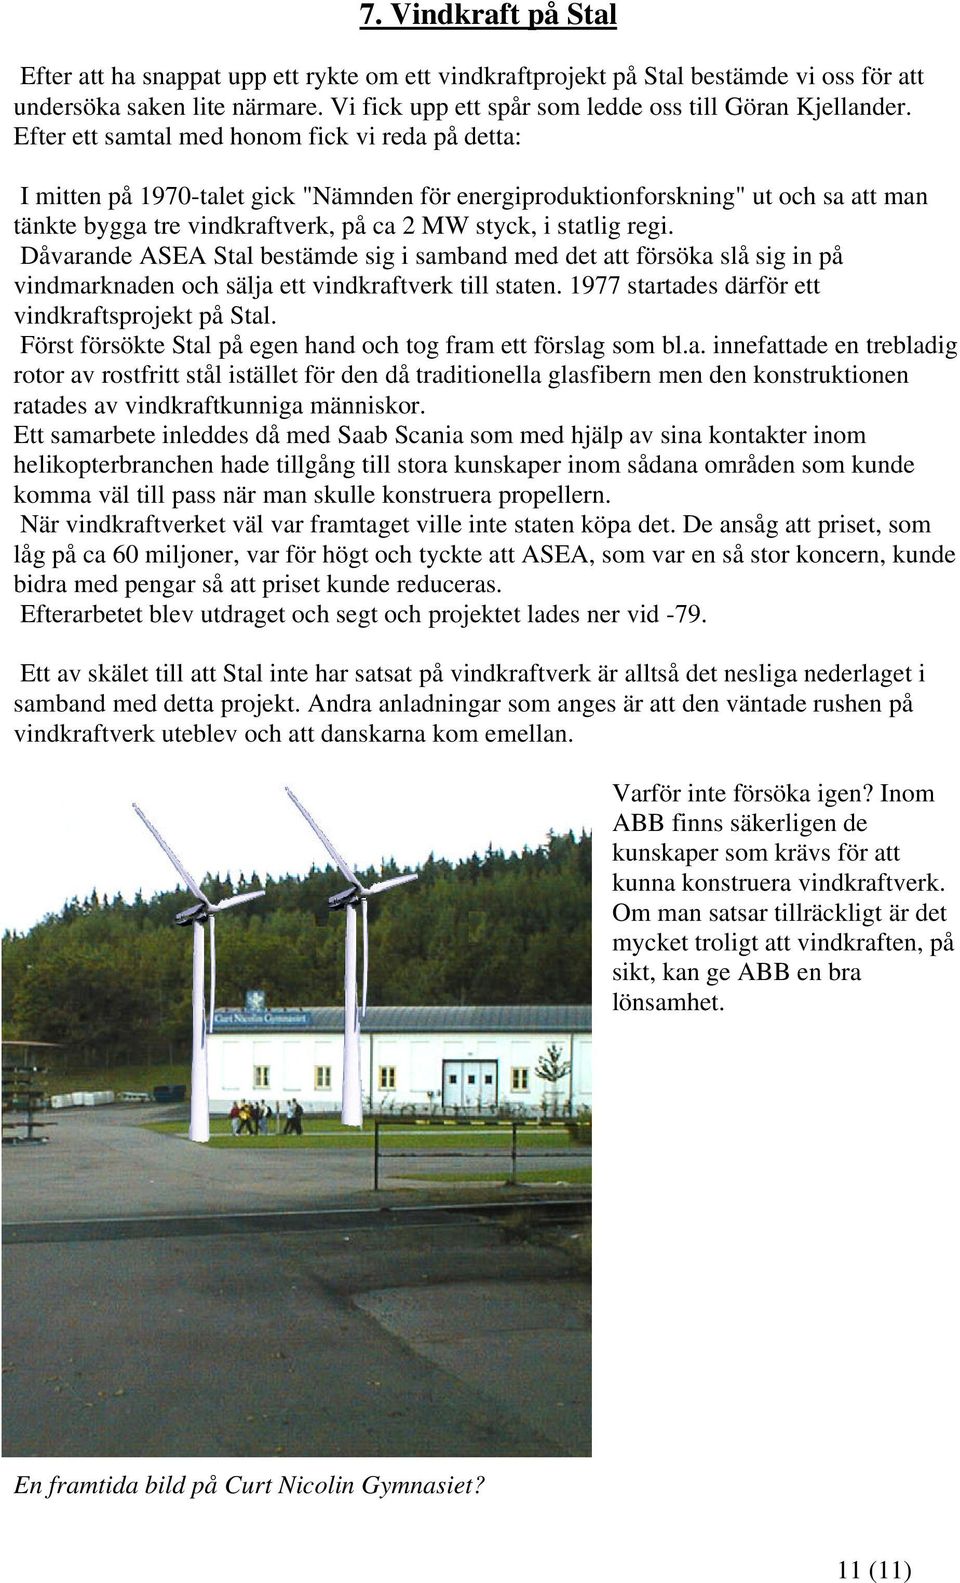 regi. Dåvarande ASEA Stal bestämde sig i samband med det att försöka slå sig in på vindmarknaden och sälja ett vindkraftverk till staten. 1977 startades därför ett vindkraftsprojekt på Stal.